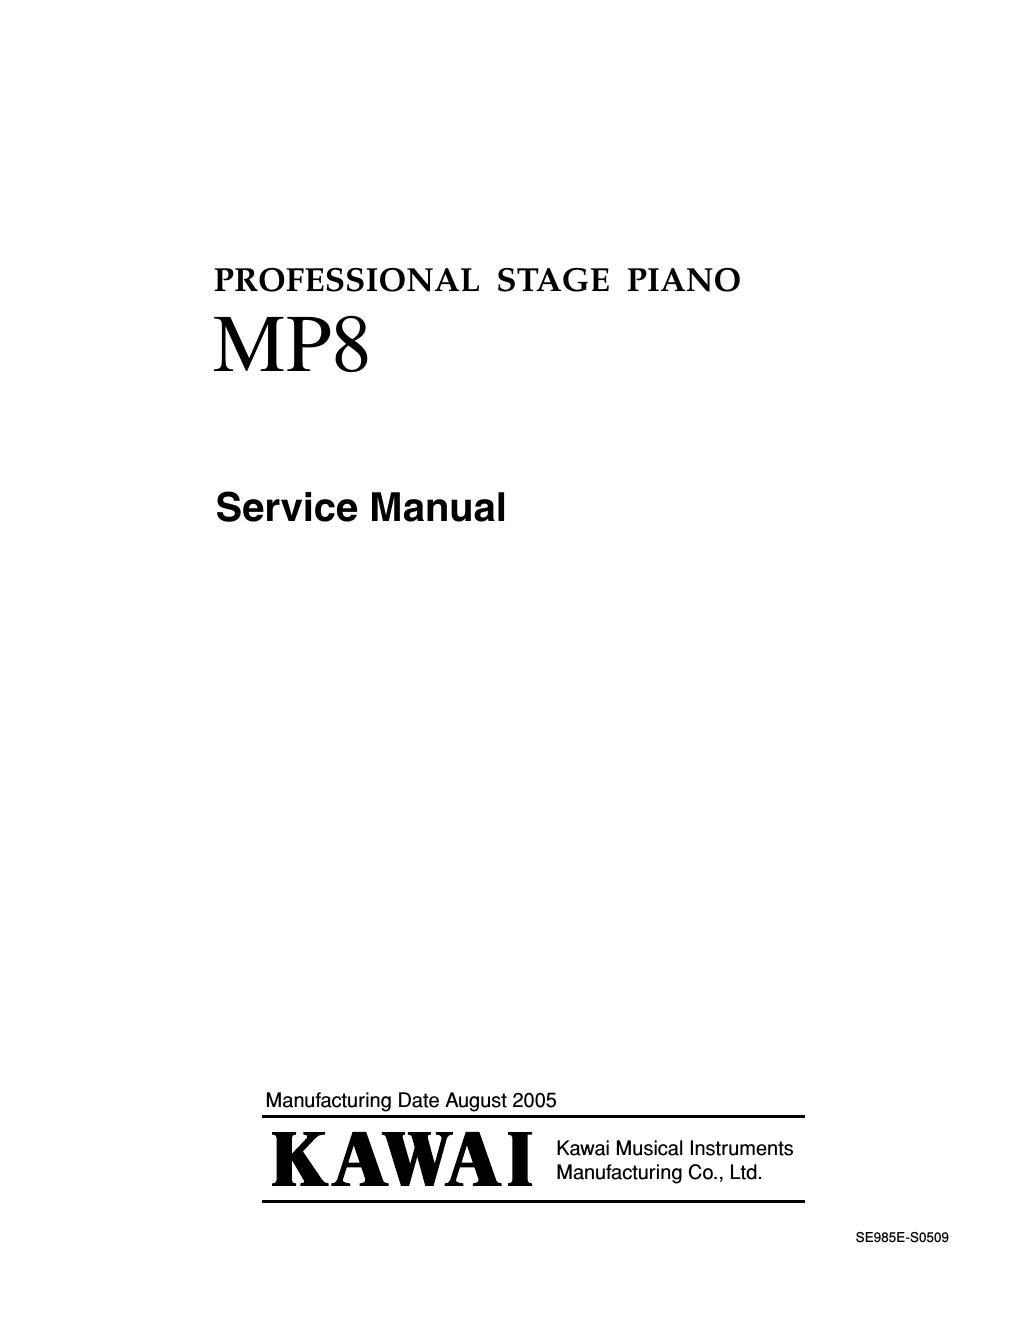 kawai mp 8 service manual